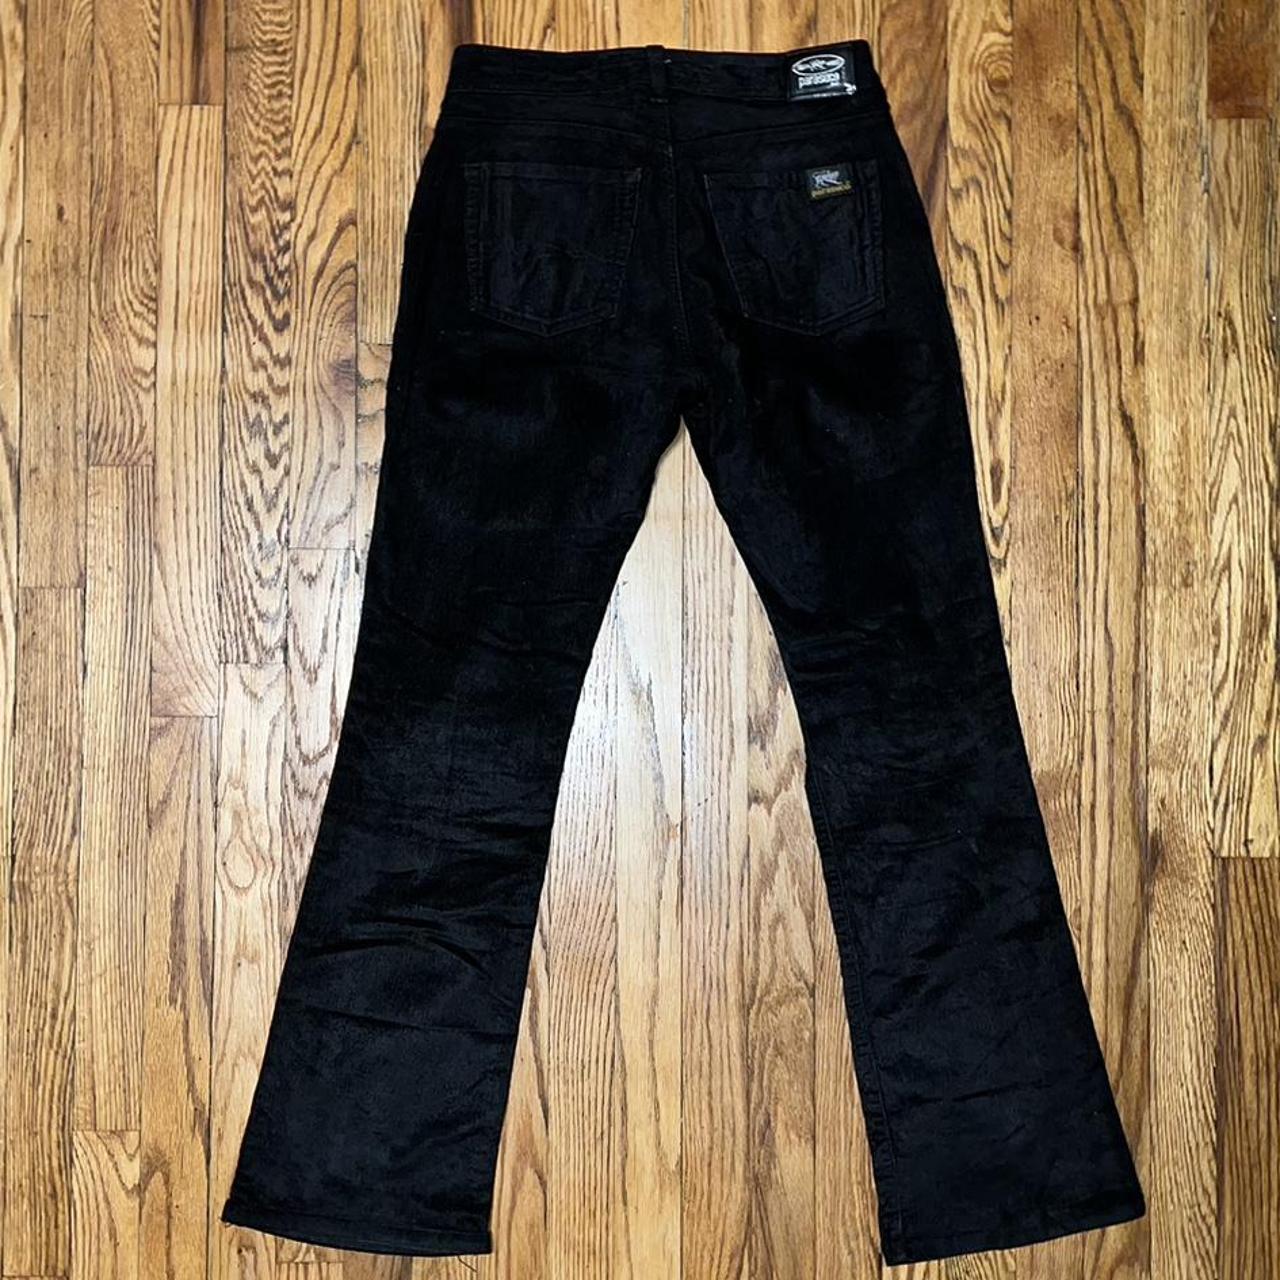 Parasuco Men's Black Jeans (2)